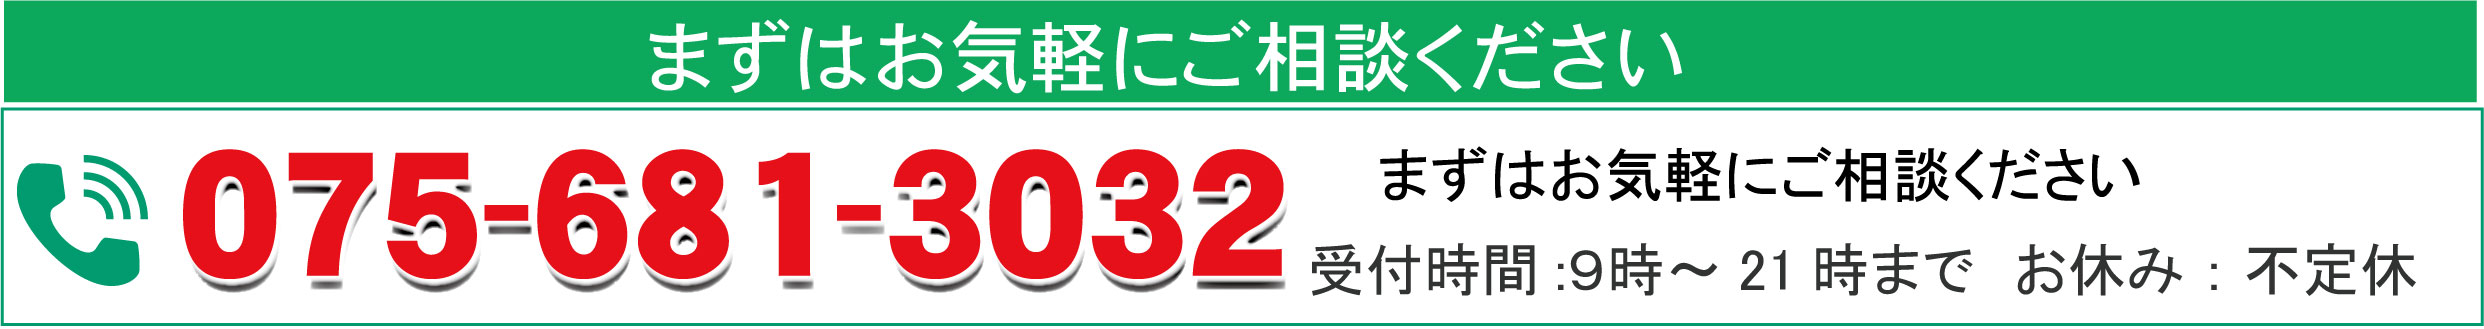 京都市南区のパソコン修理、パソコン設定業者のエヌシーオーです。電話番号は、京都 075-681-3032